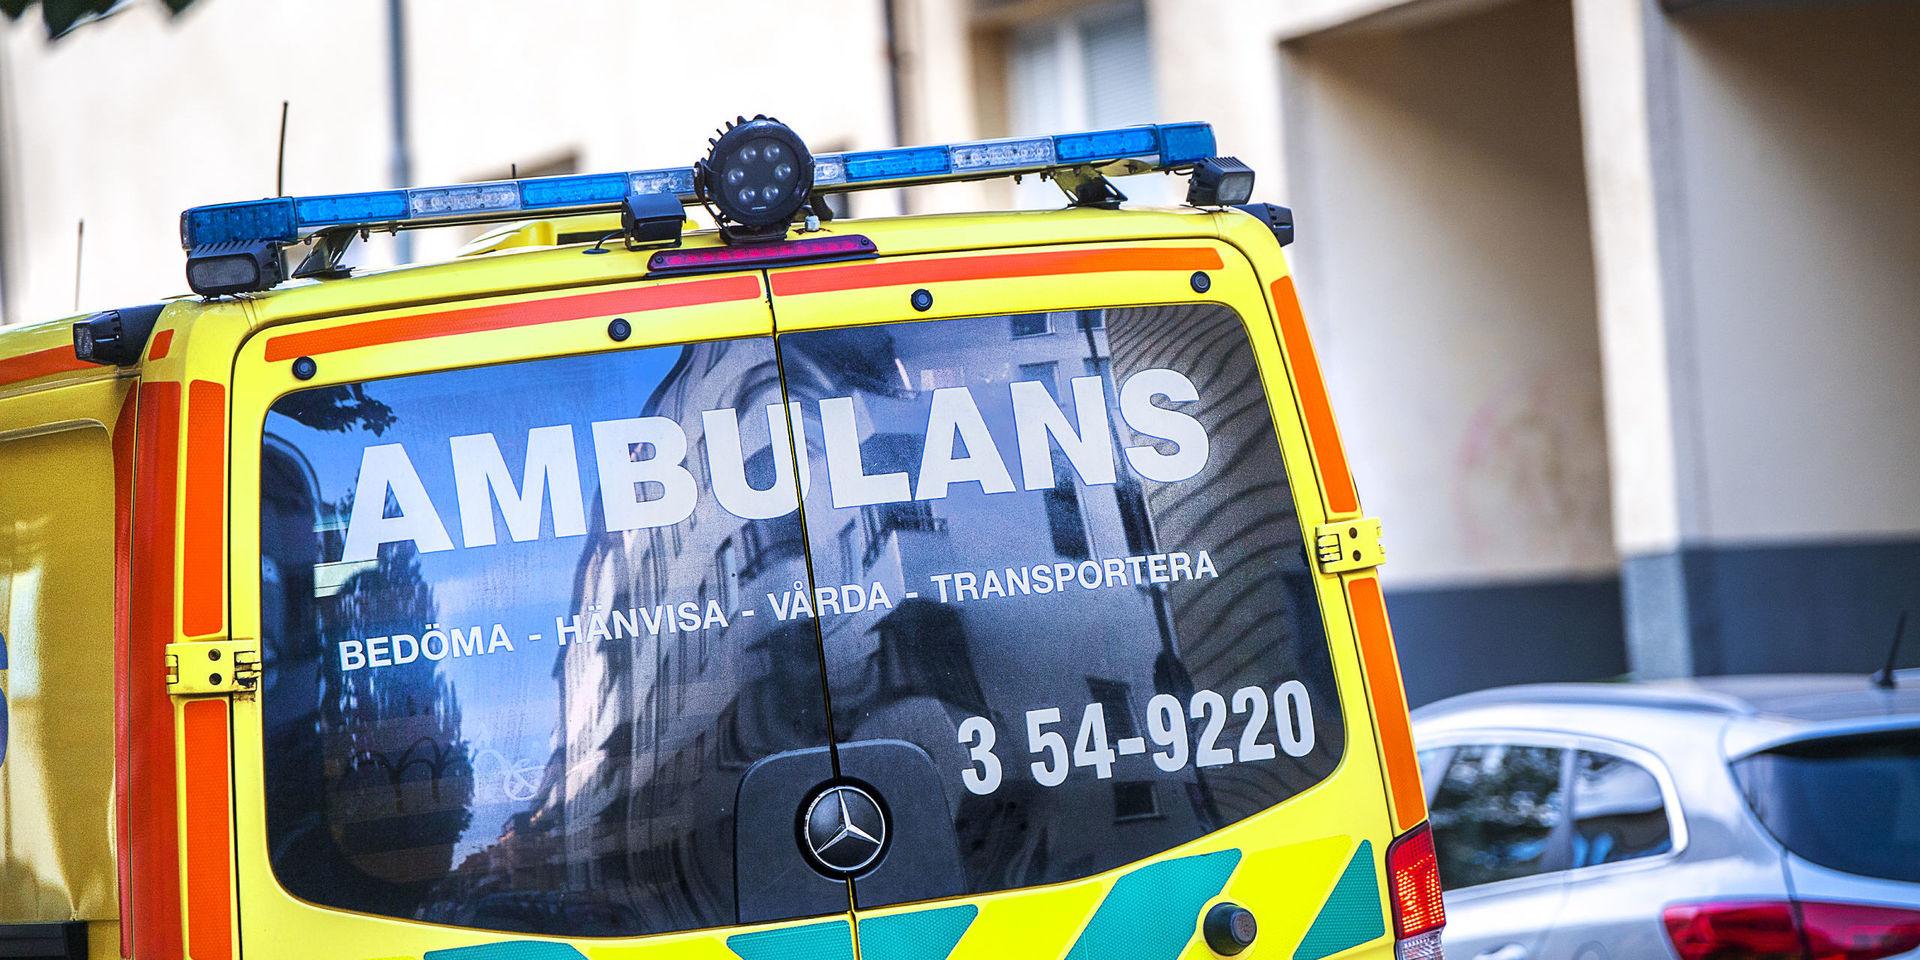 Polis och ambulans larmades till Lindome på onsdagen. En man ska ha skadats med en motorsåg. Polisen utreder händelsen som en arbetsplatsolycka.